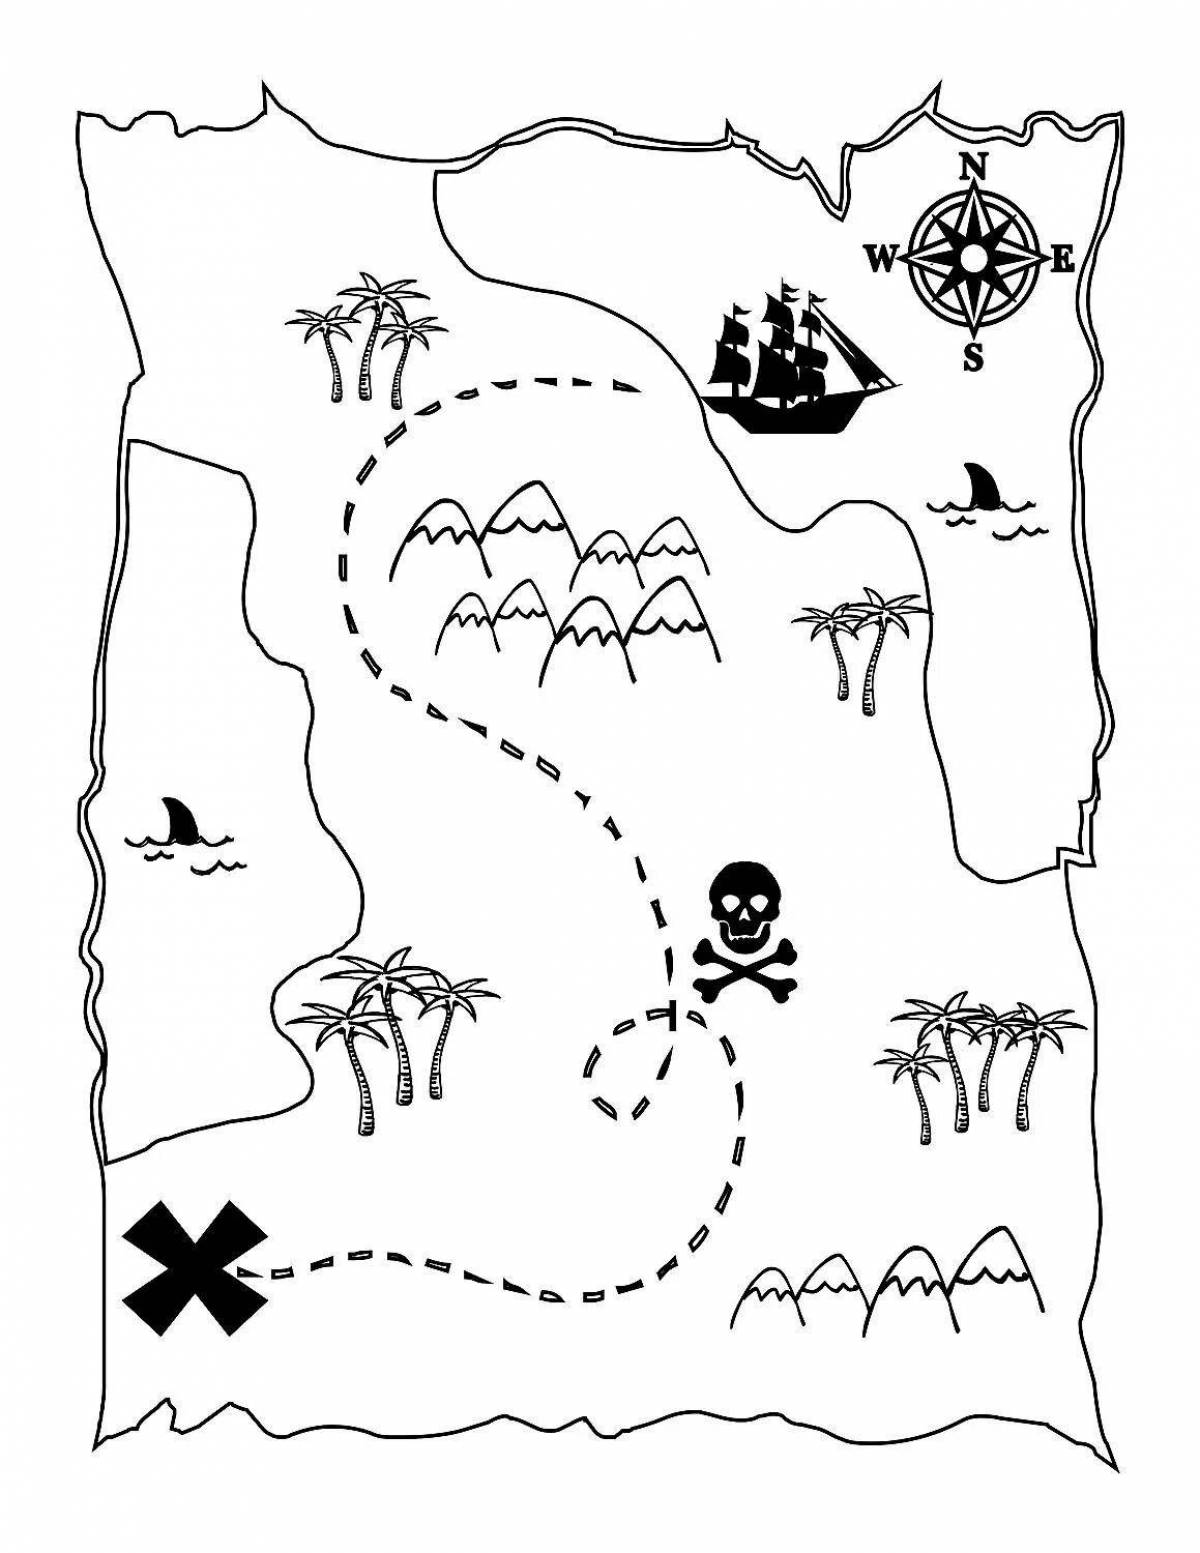 Оживленная страница раскраски пиратской карты